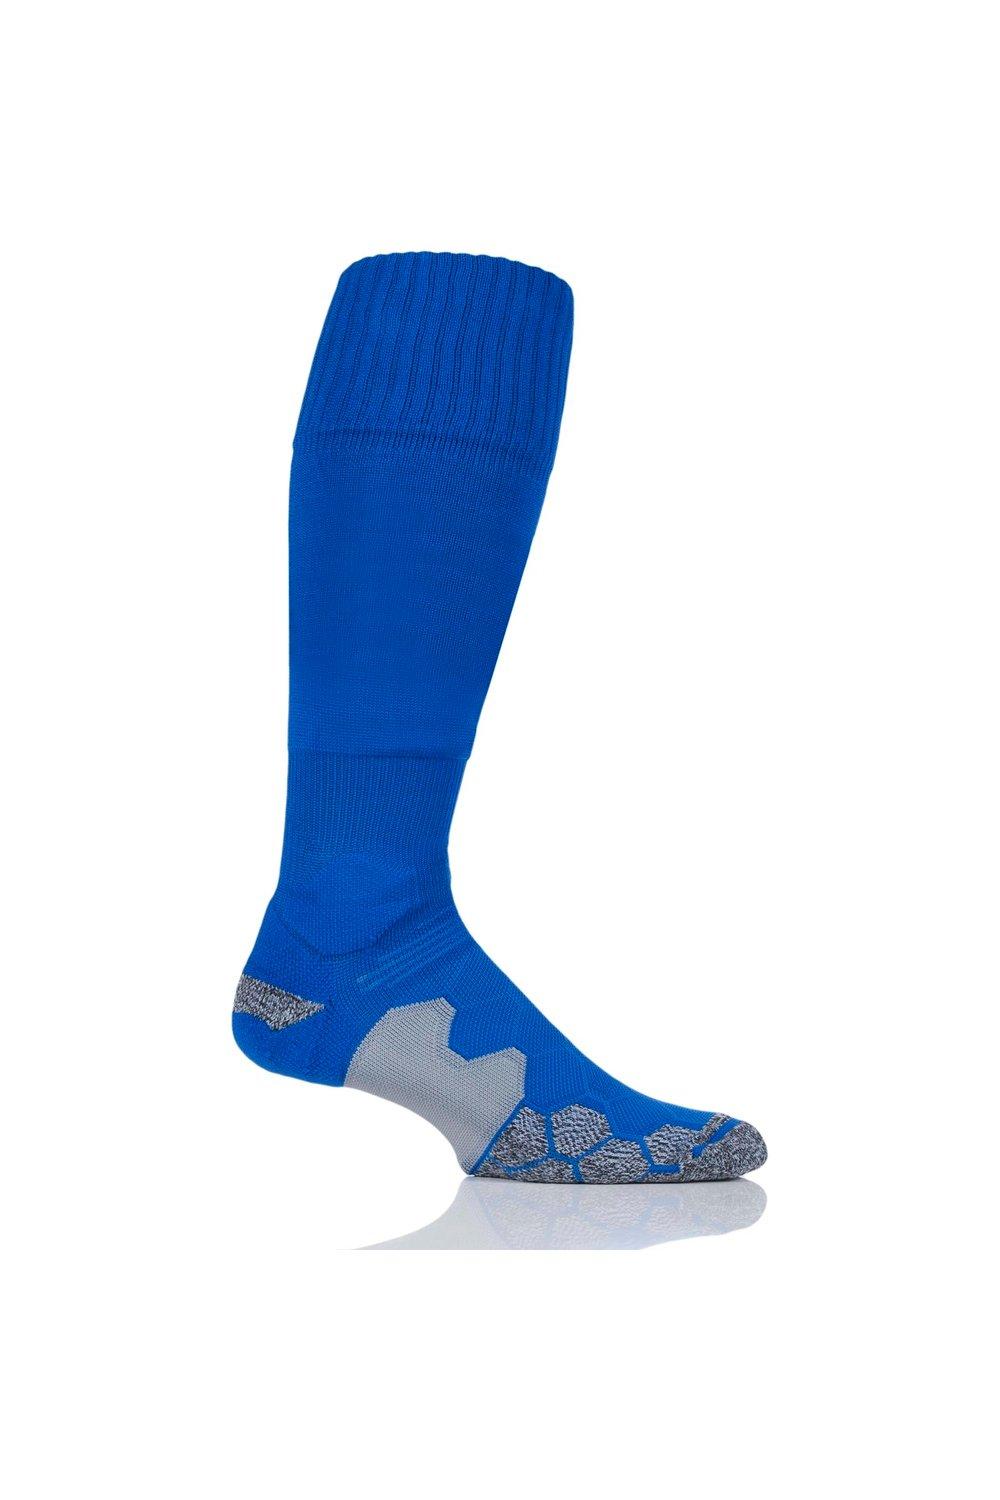 1 пара технических футбольных носков с мягкой подкладкой, произведенных в Великобритании SOCKSHOP of London, синий